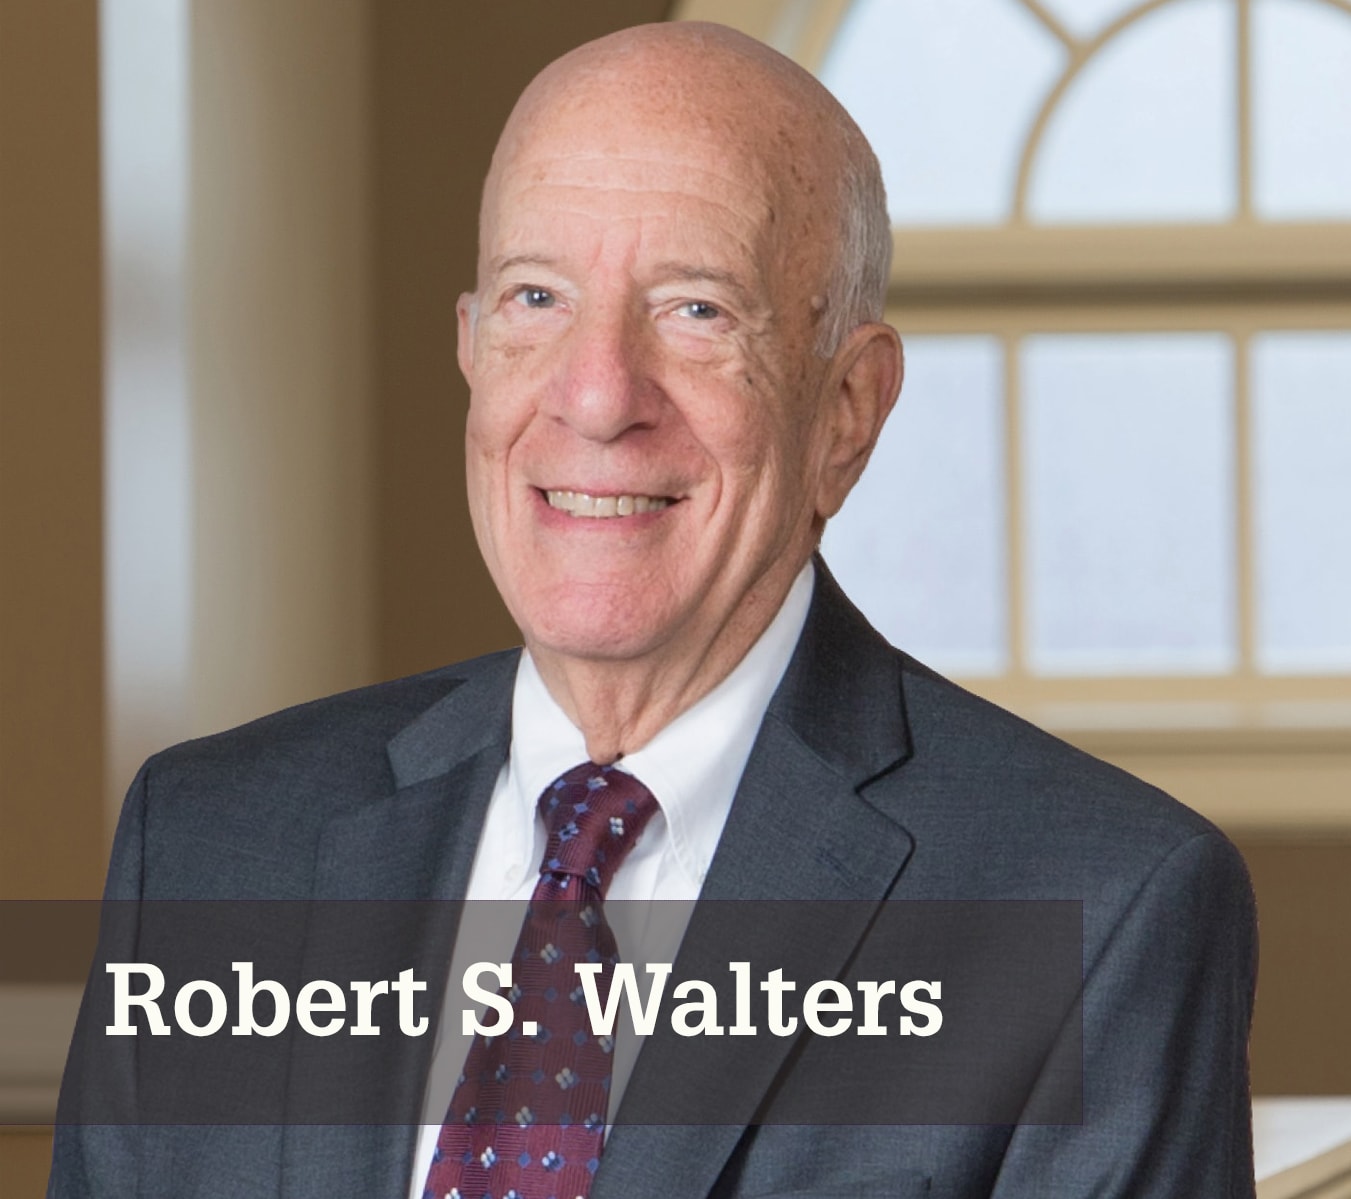 Robert S. Walters